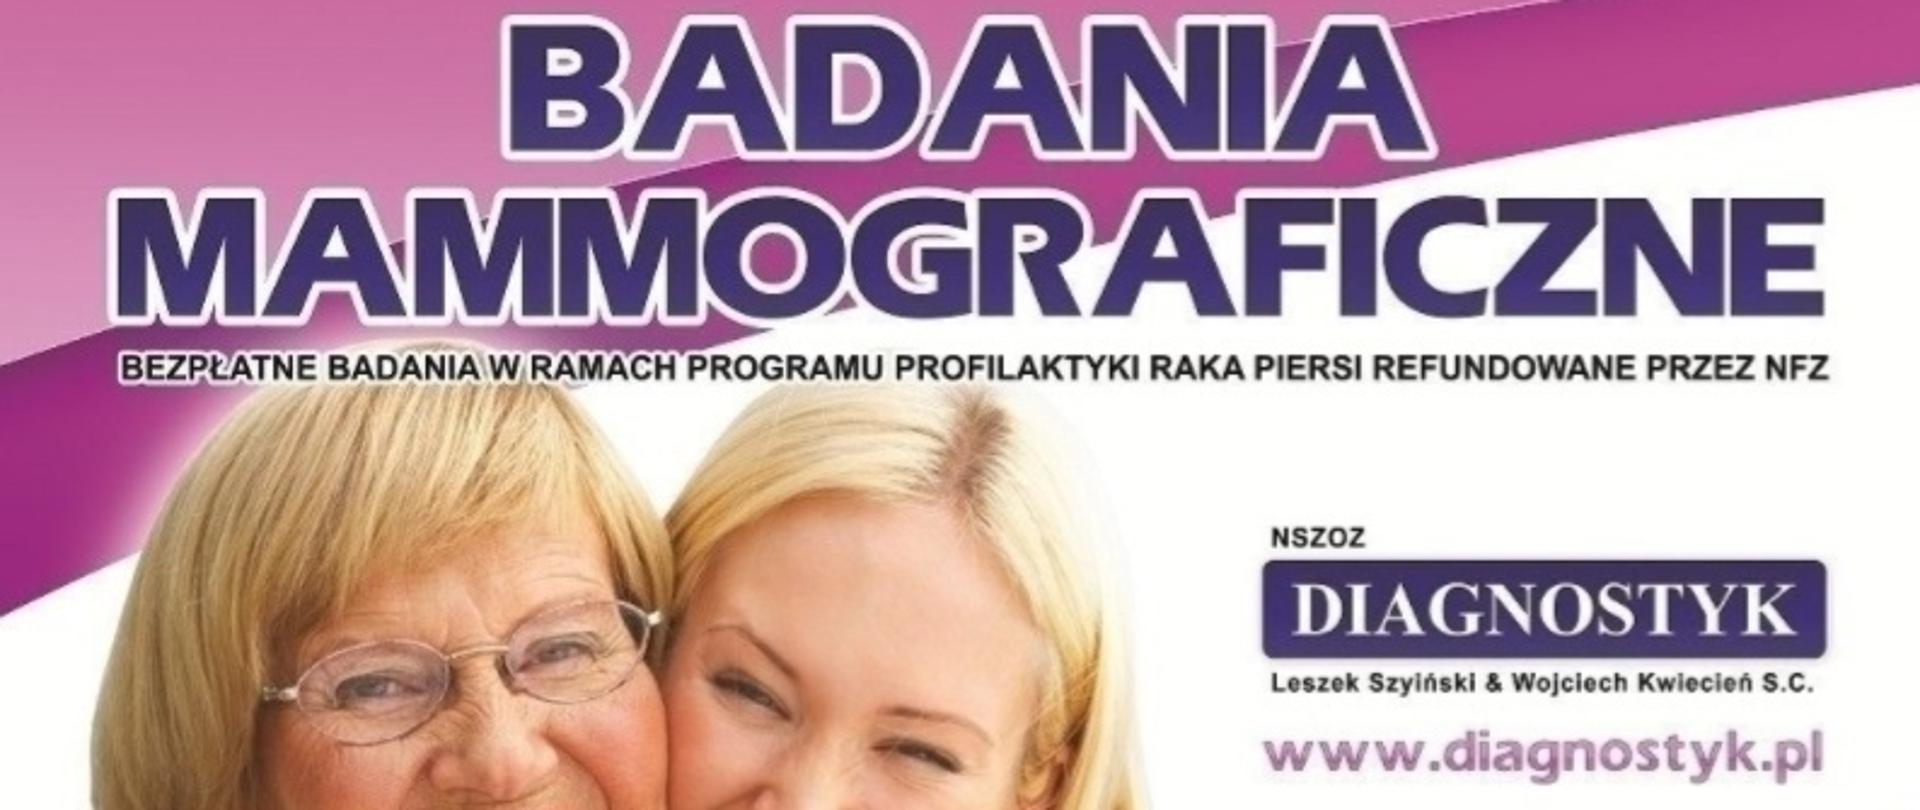 ulotka w kolorystyce fioletowo-białej, 2 uśmiechnięte kobiety, młodsza obejmuje starszą, informacje tekstowe o badaniach mammograficznych